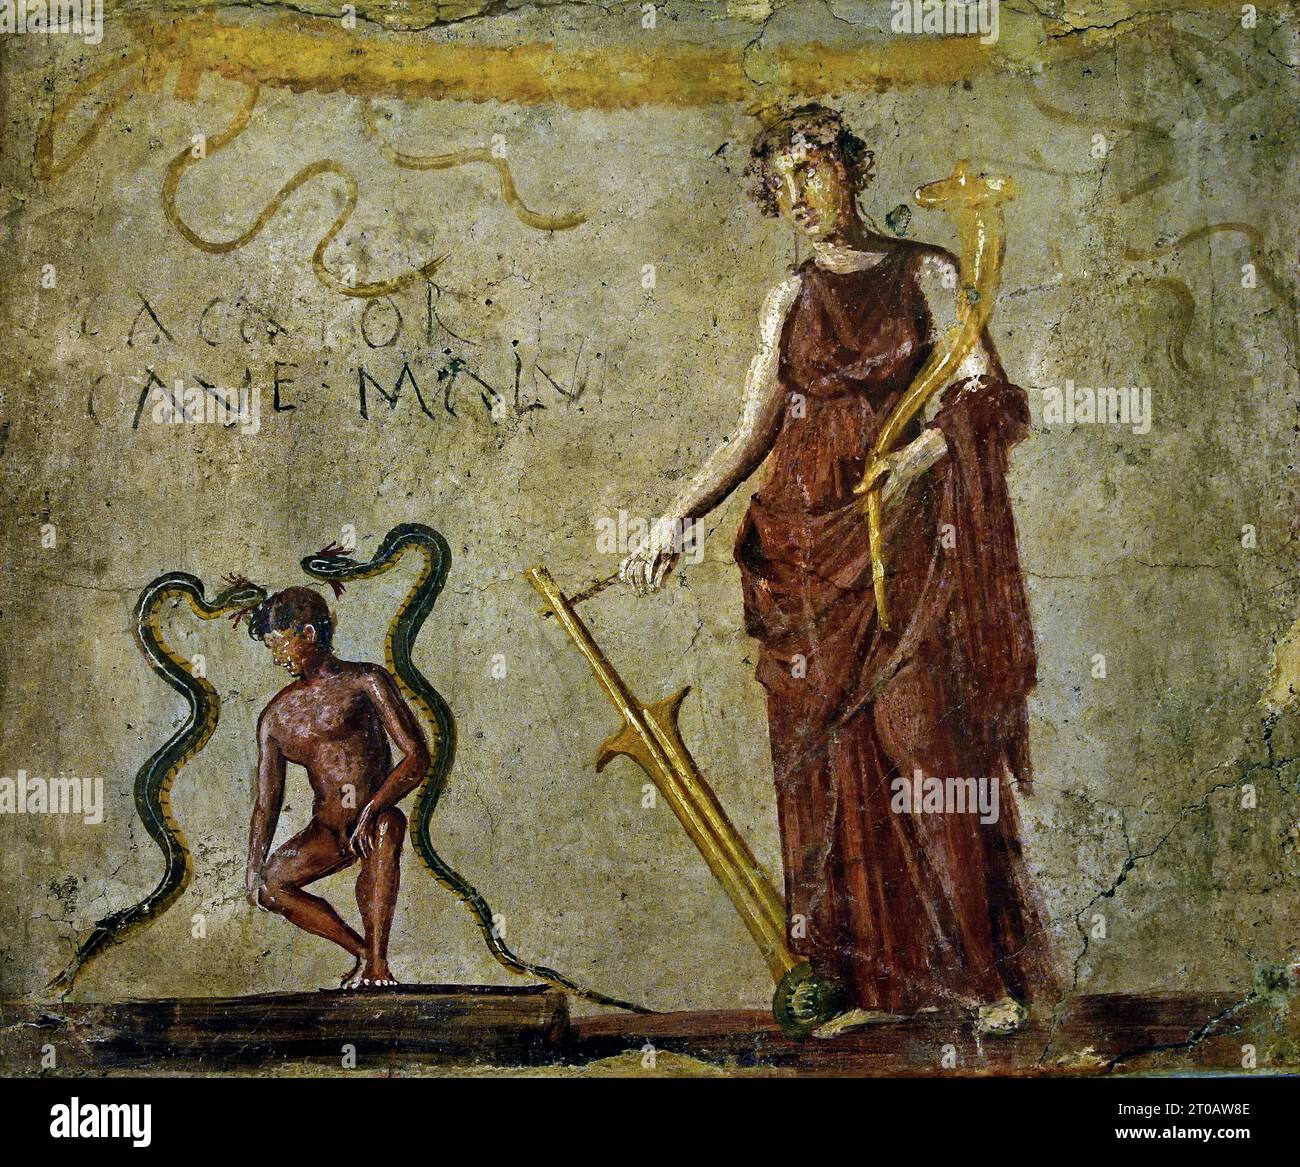 ISIS fortuna, 45-79 fresco Pompei città romana si trova vicino a Napoli, nella regione Campania. Pompei fu sepolta sotto 4-6 m di cenere vulcanica e pomice nell'eruzione del Vesuvio nel 79 d.C. Italia Foto Stock